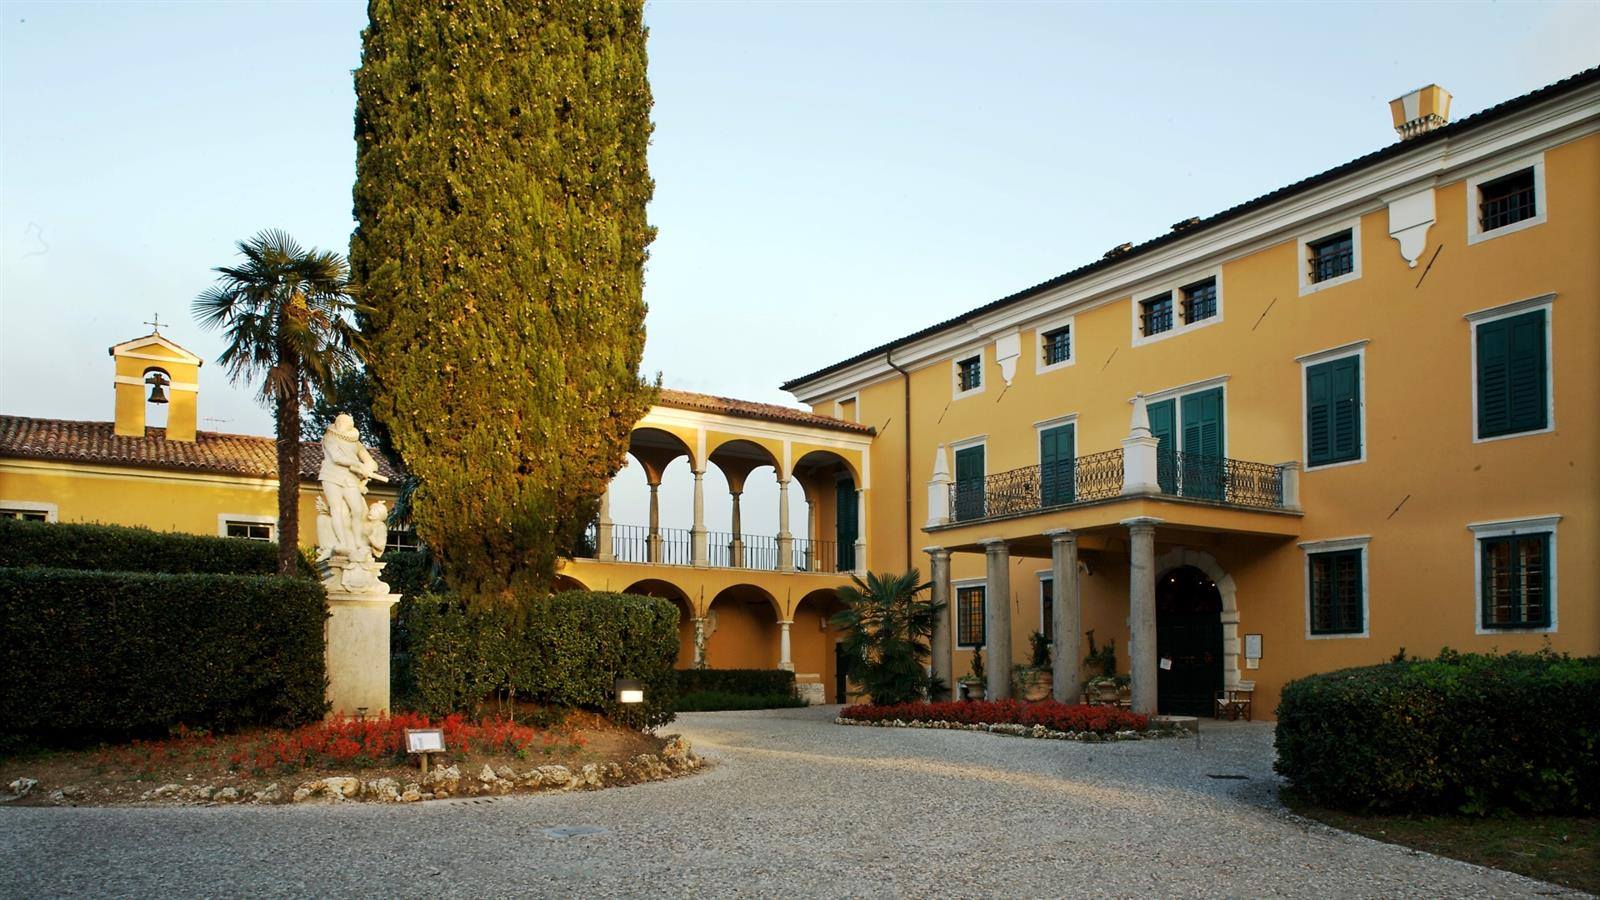 Palazzo Coronini